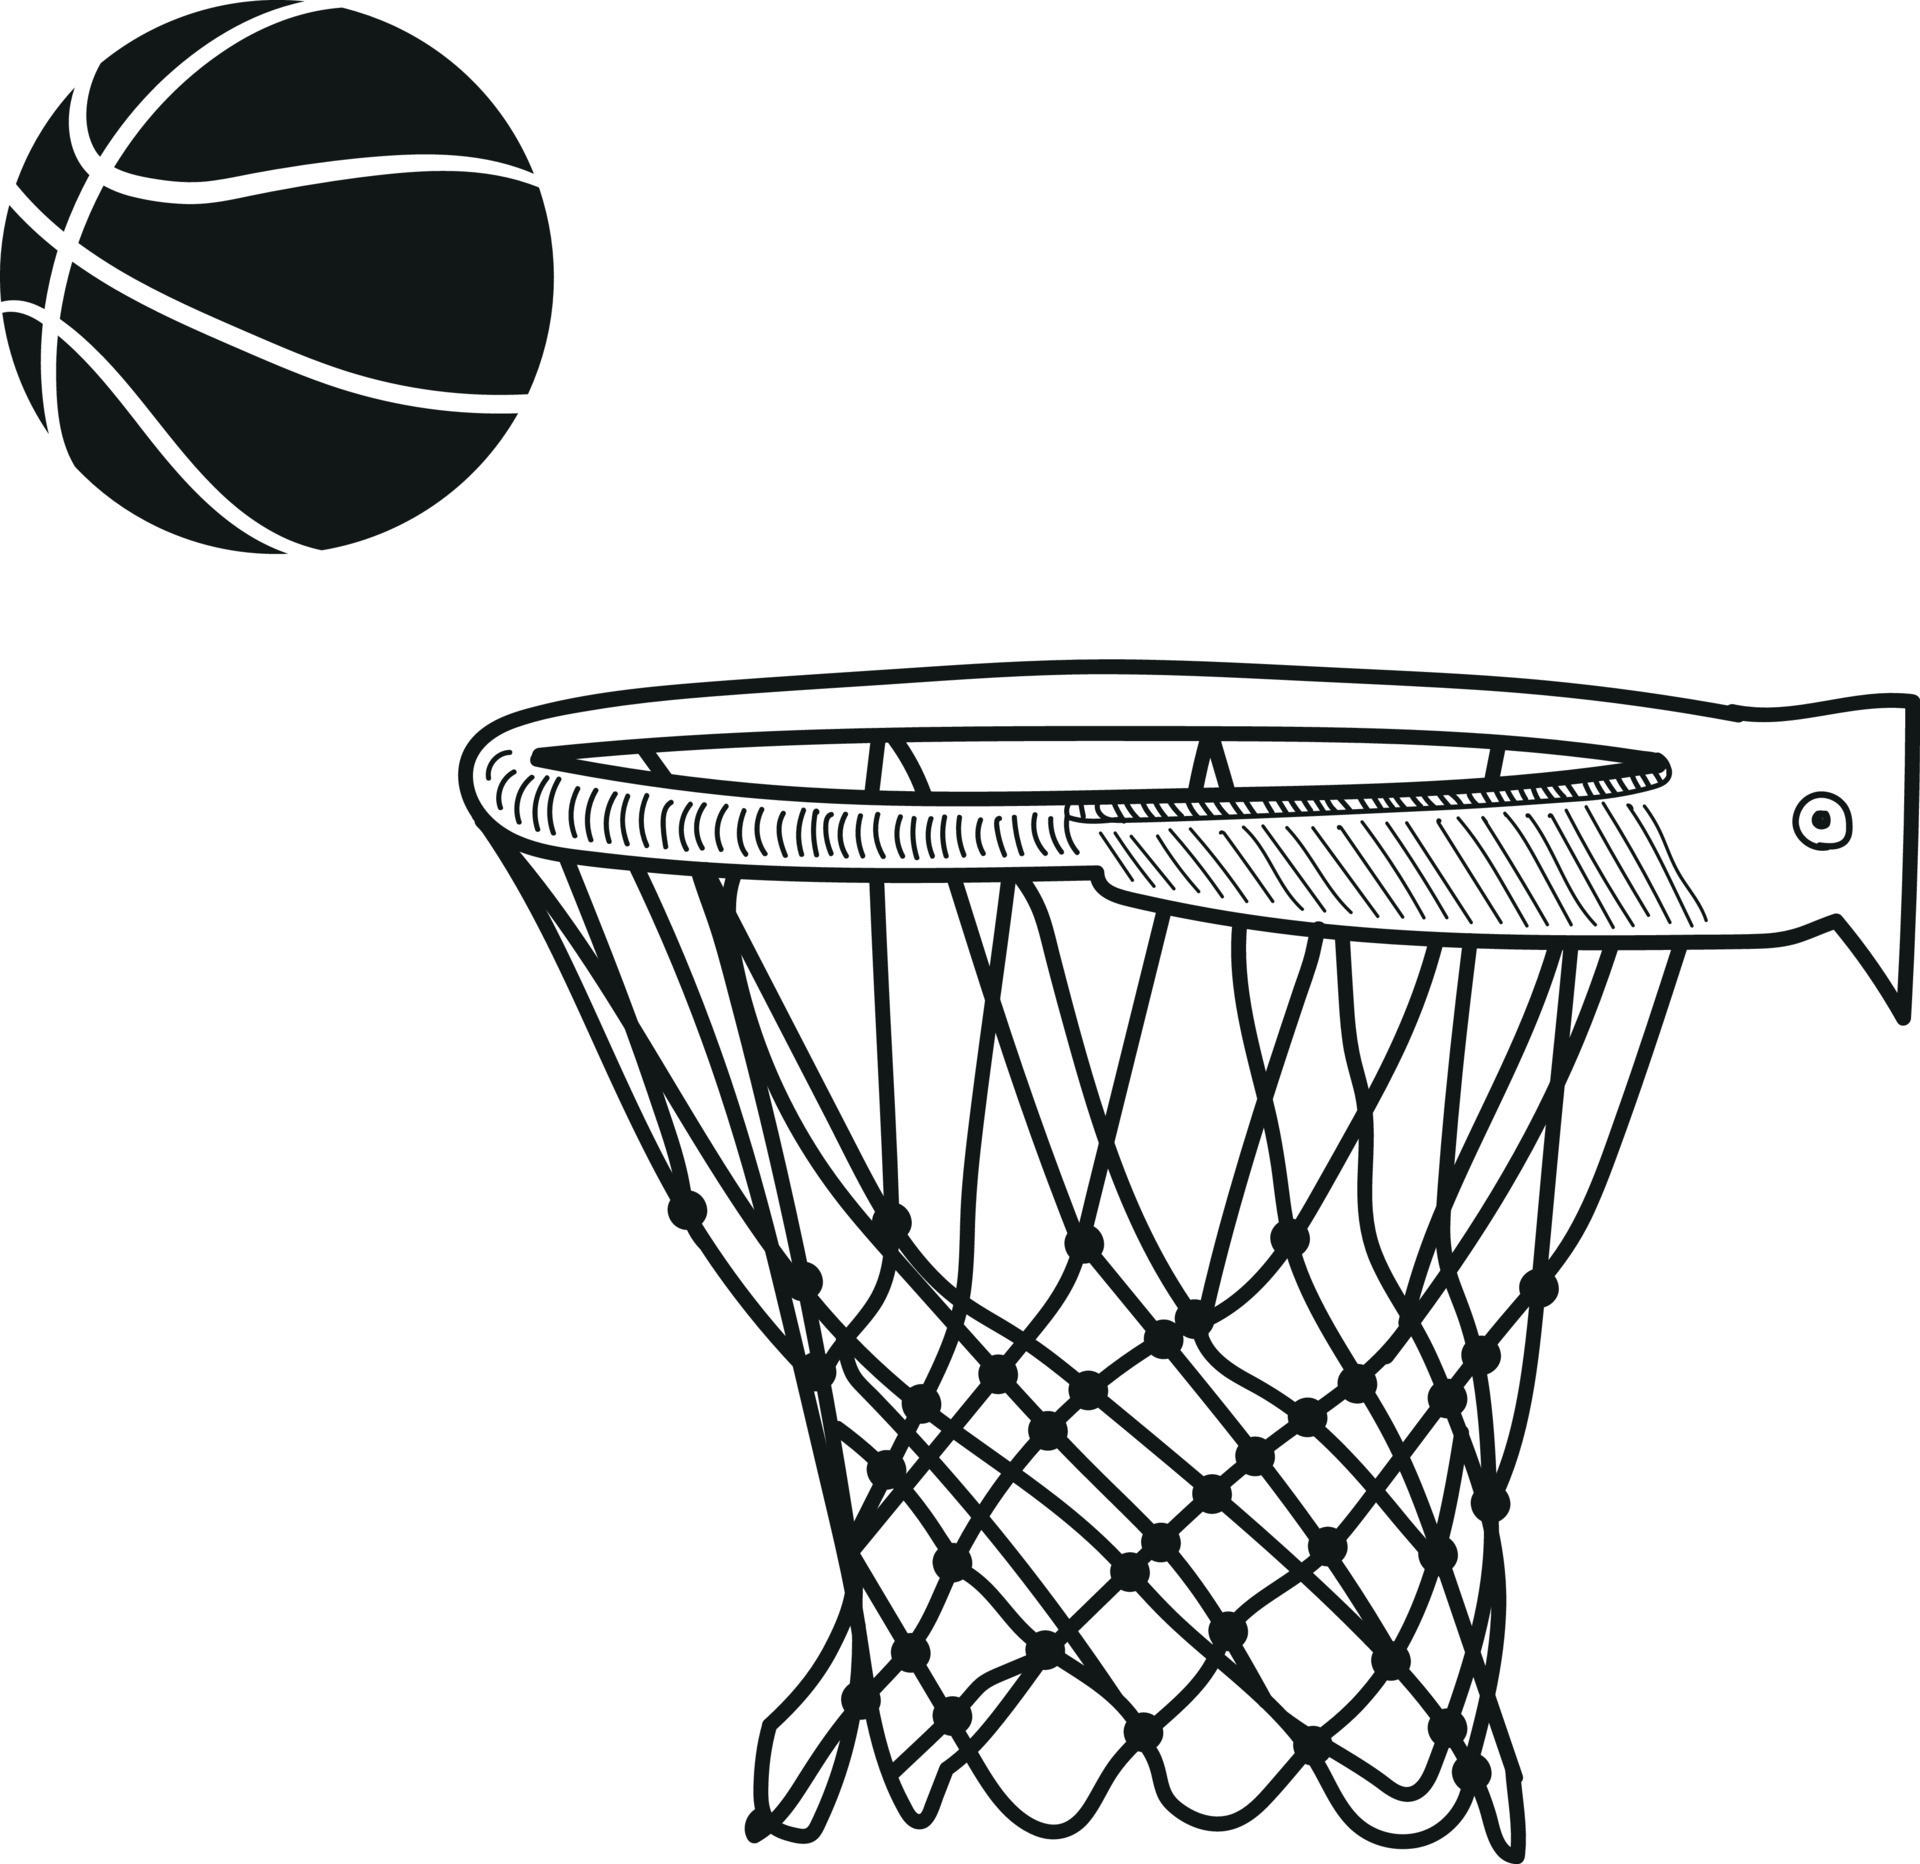 Basketball net, basketball hoop, basketball goal illustration on white ...